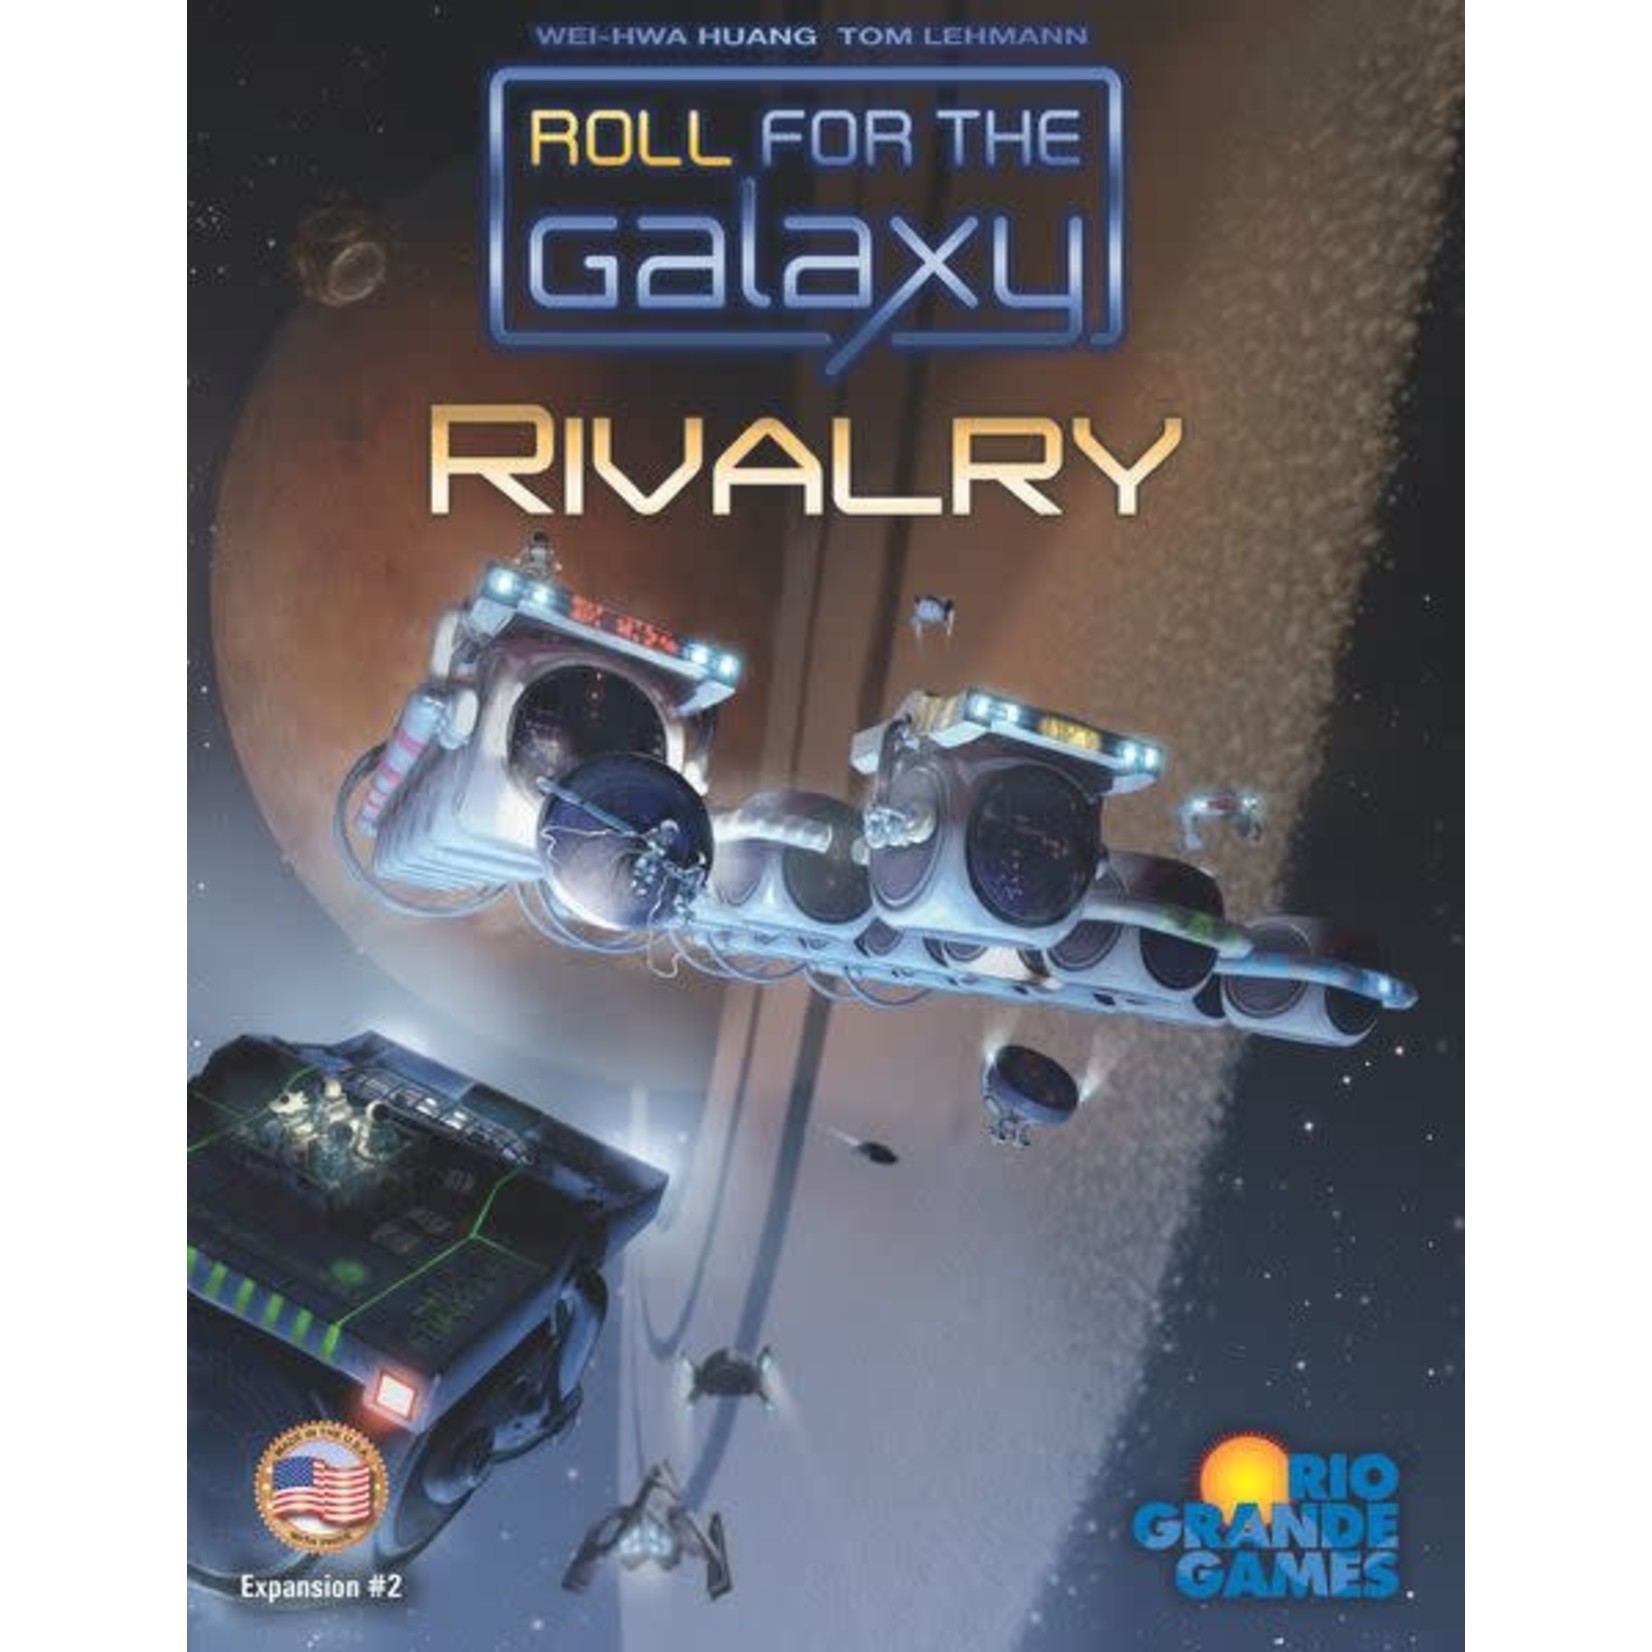 Rio Grande Games Roll for the Galaxy + Rivalry Bundle